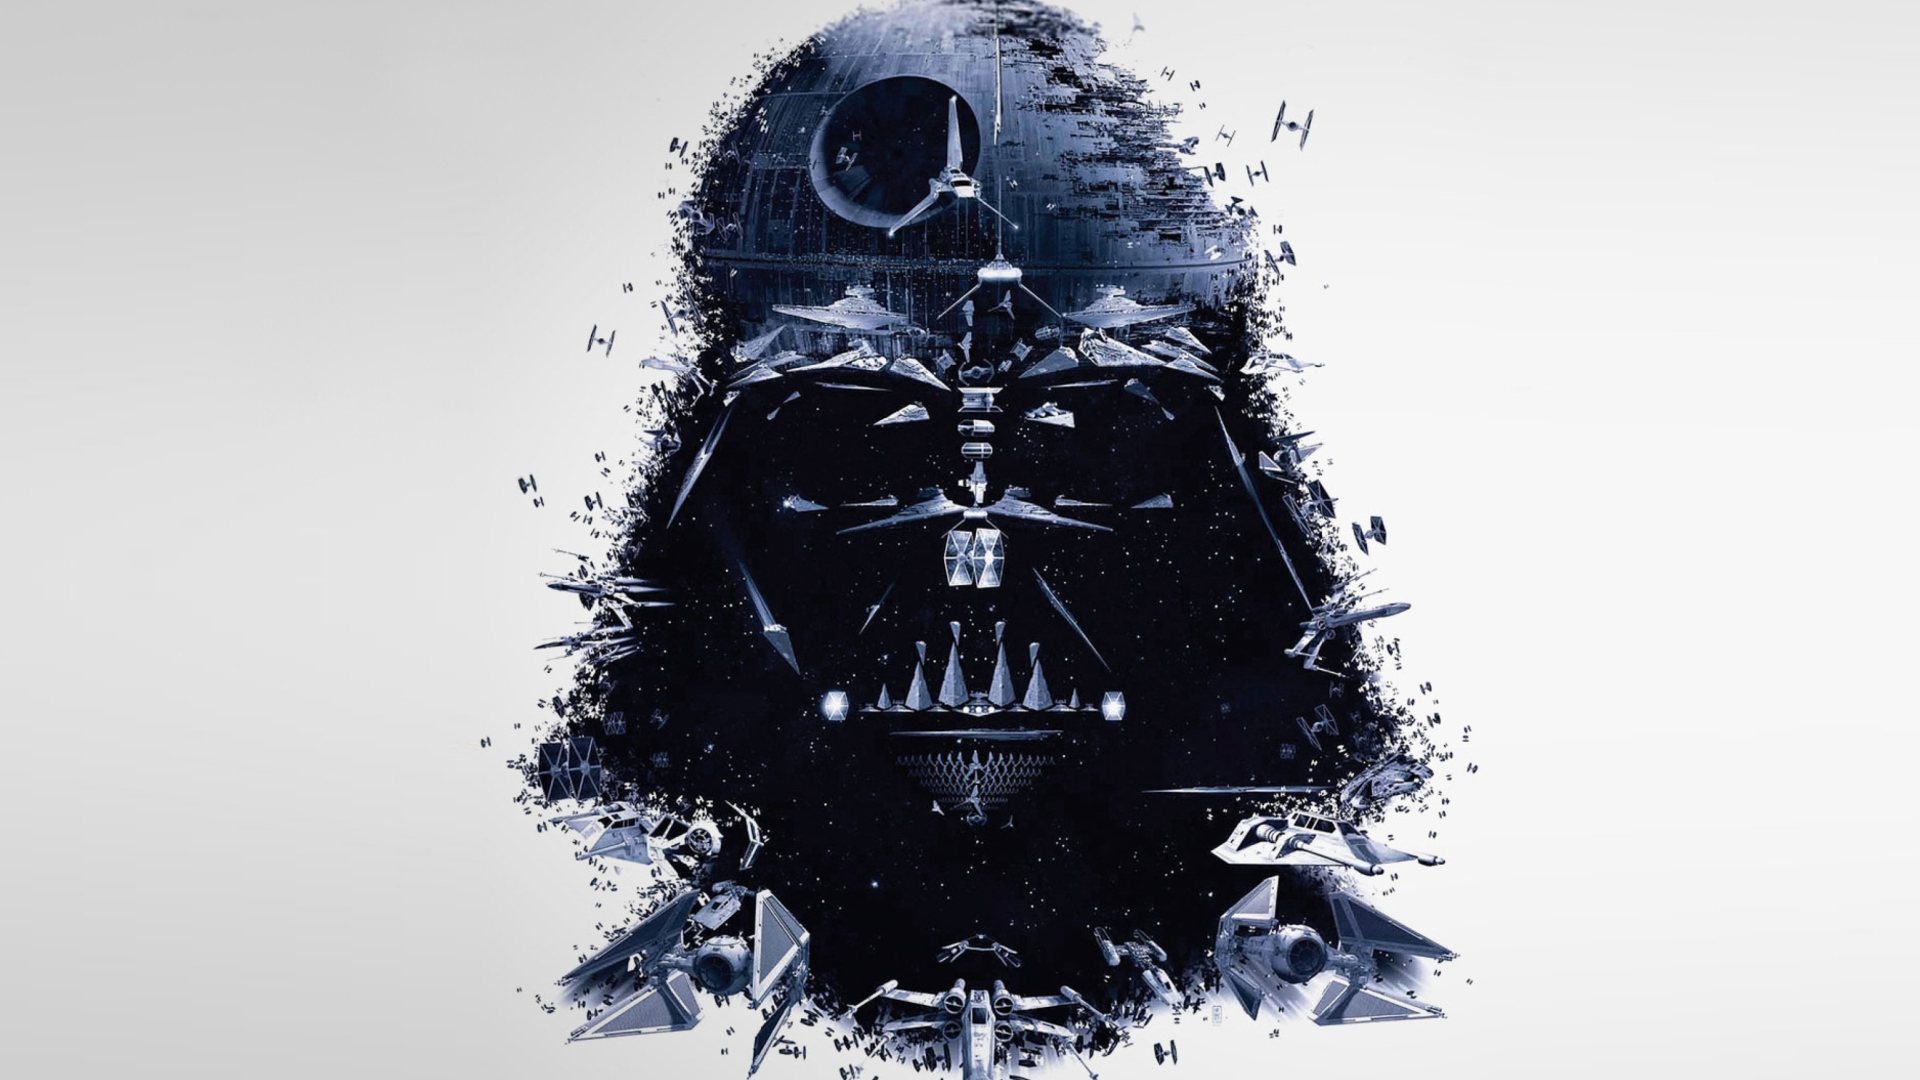 Darth Vader Star Wars wallpaper 1920x1080